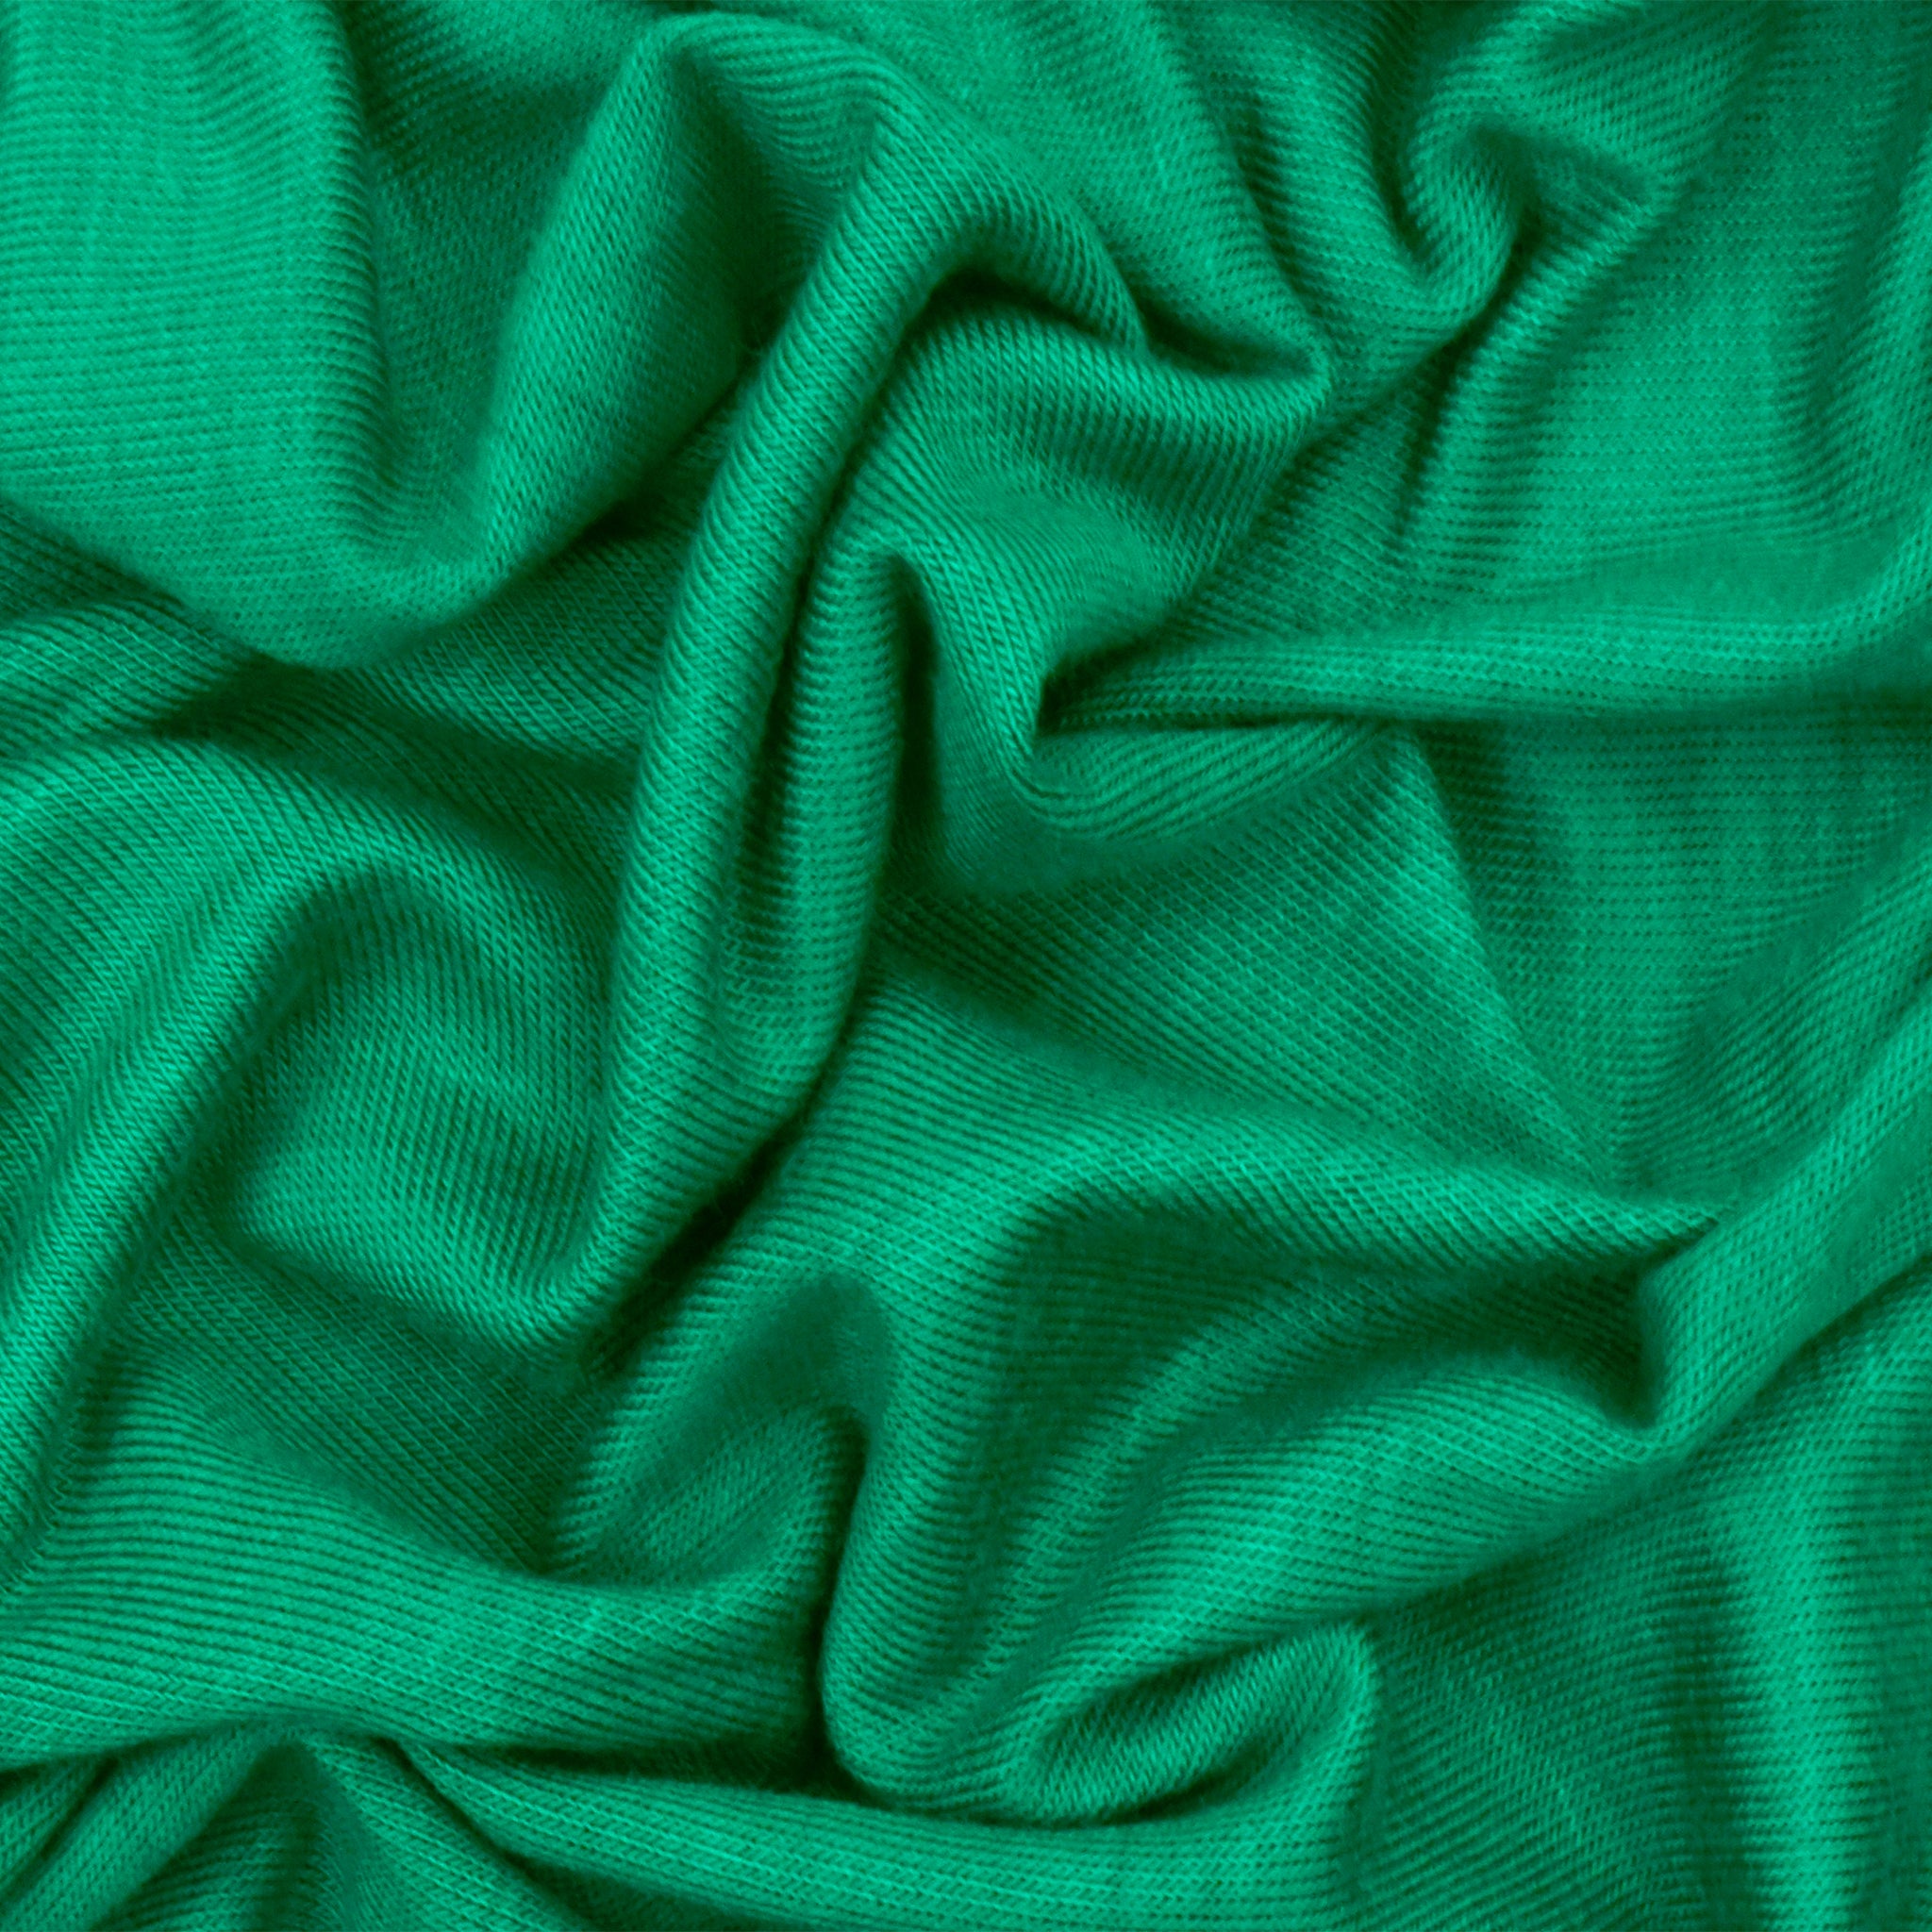 Silk Taffeta – Denver Fabrics